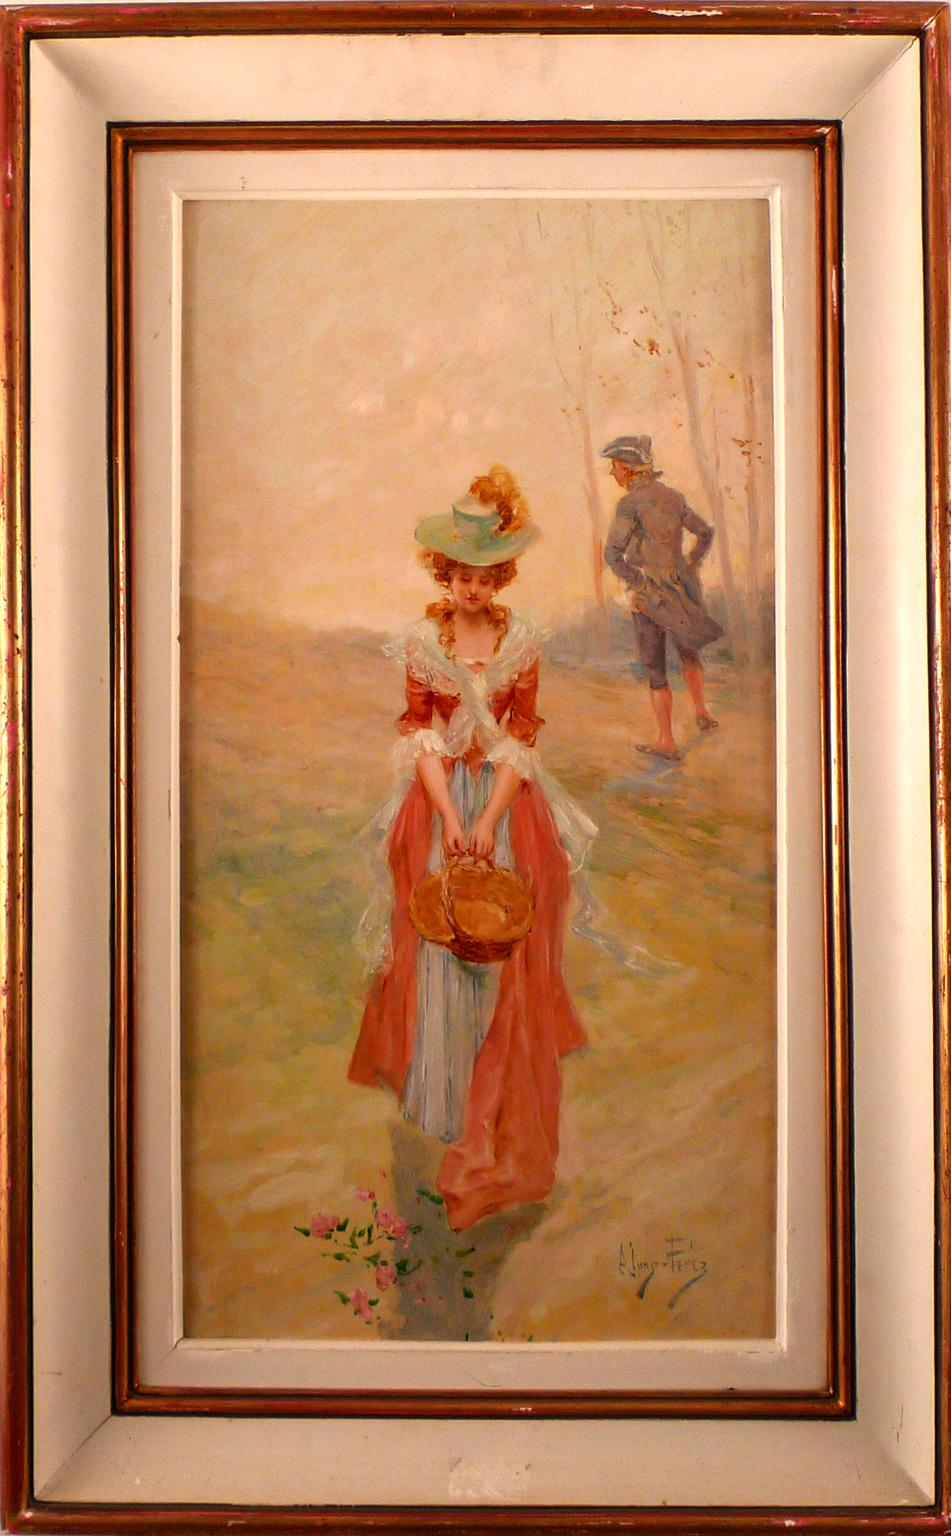   « La recherche », huile sur toile de la fin du XIXe siècle de l'artiste espagnol M. Alonso Prez - Painting de Mariano Alonso Pérez